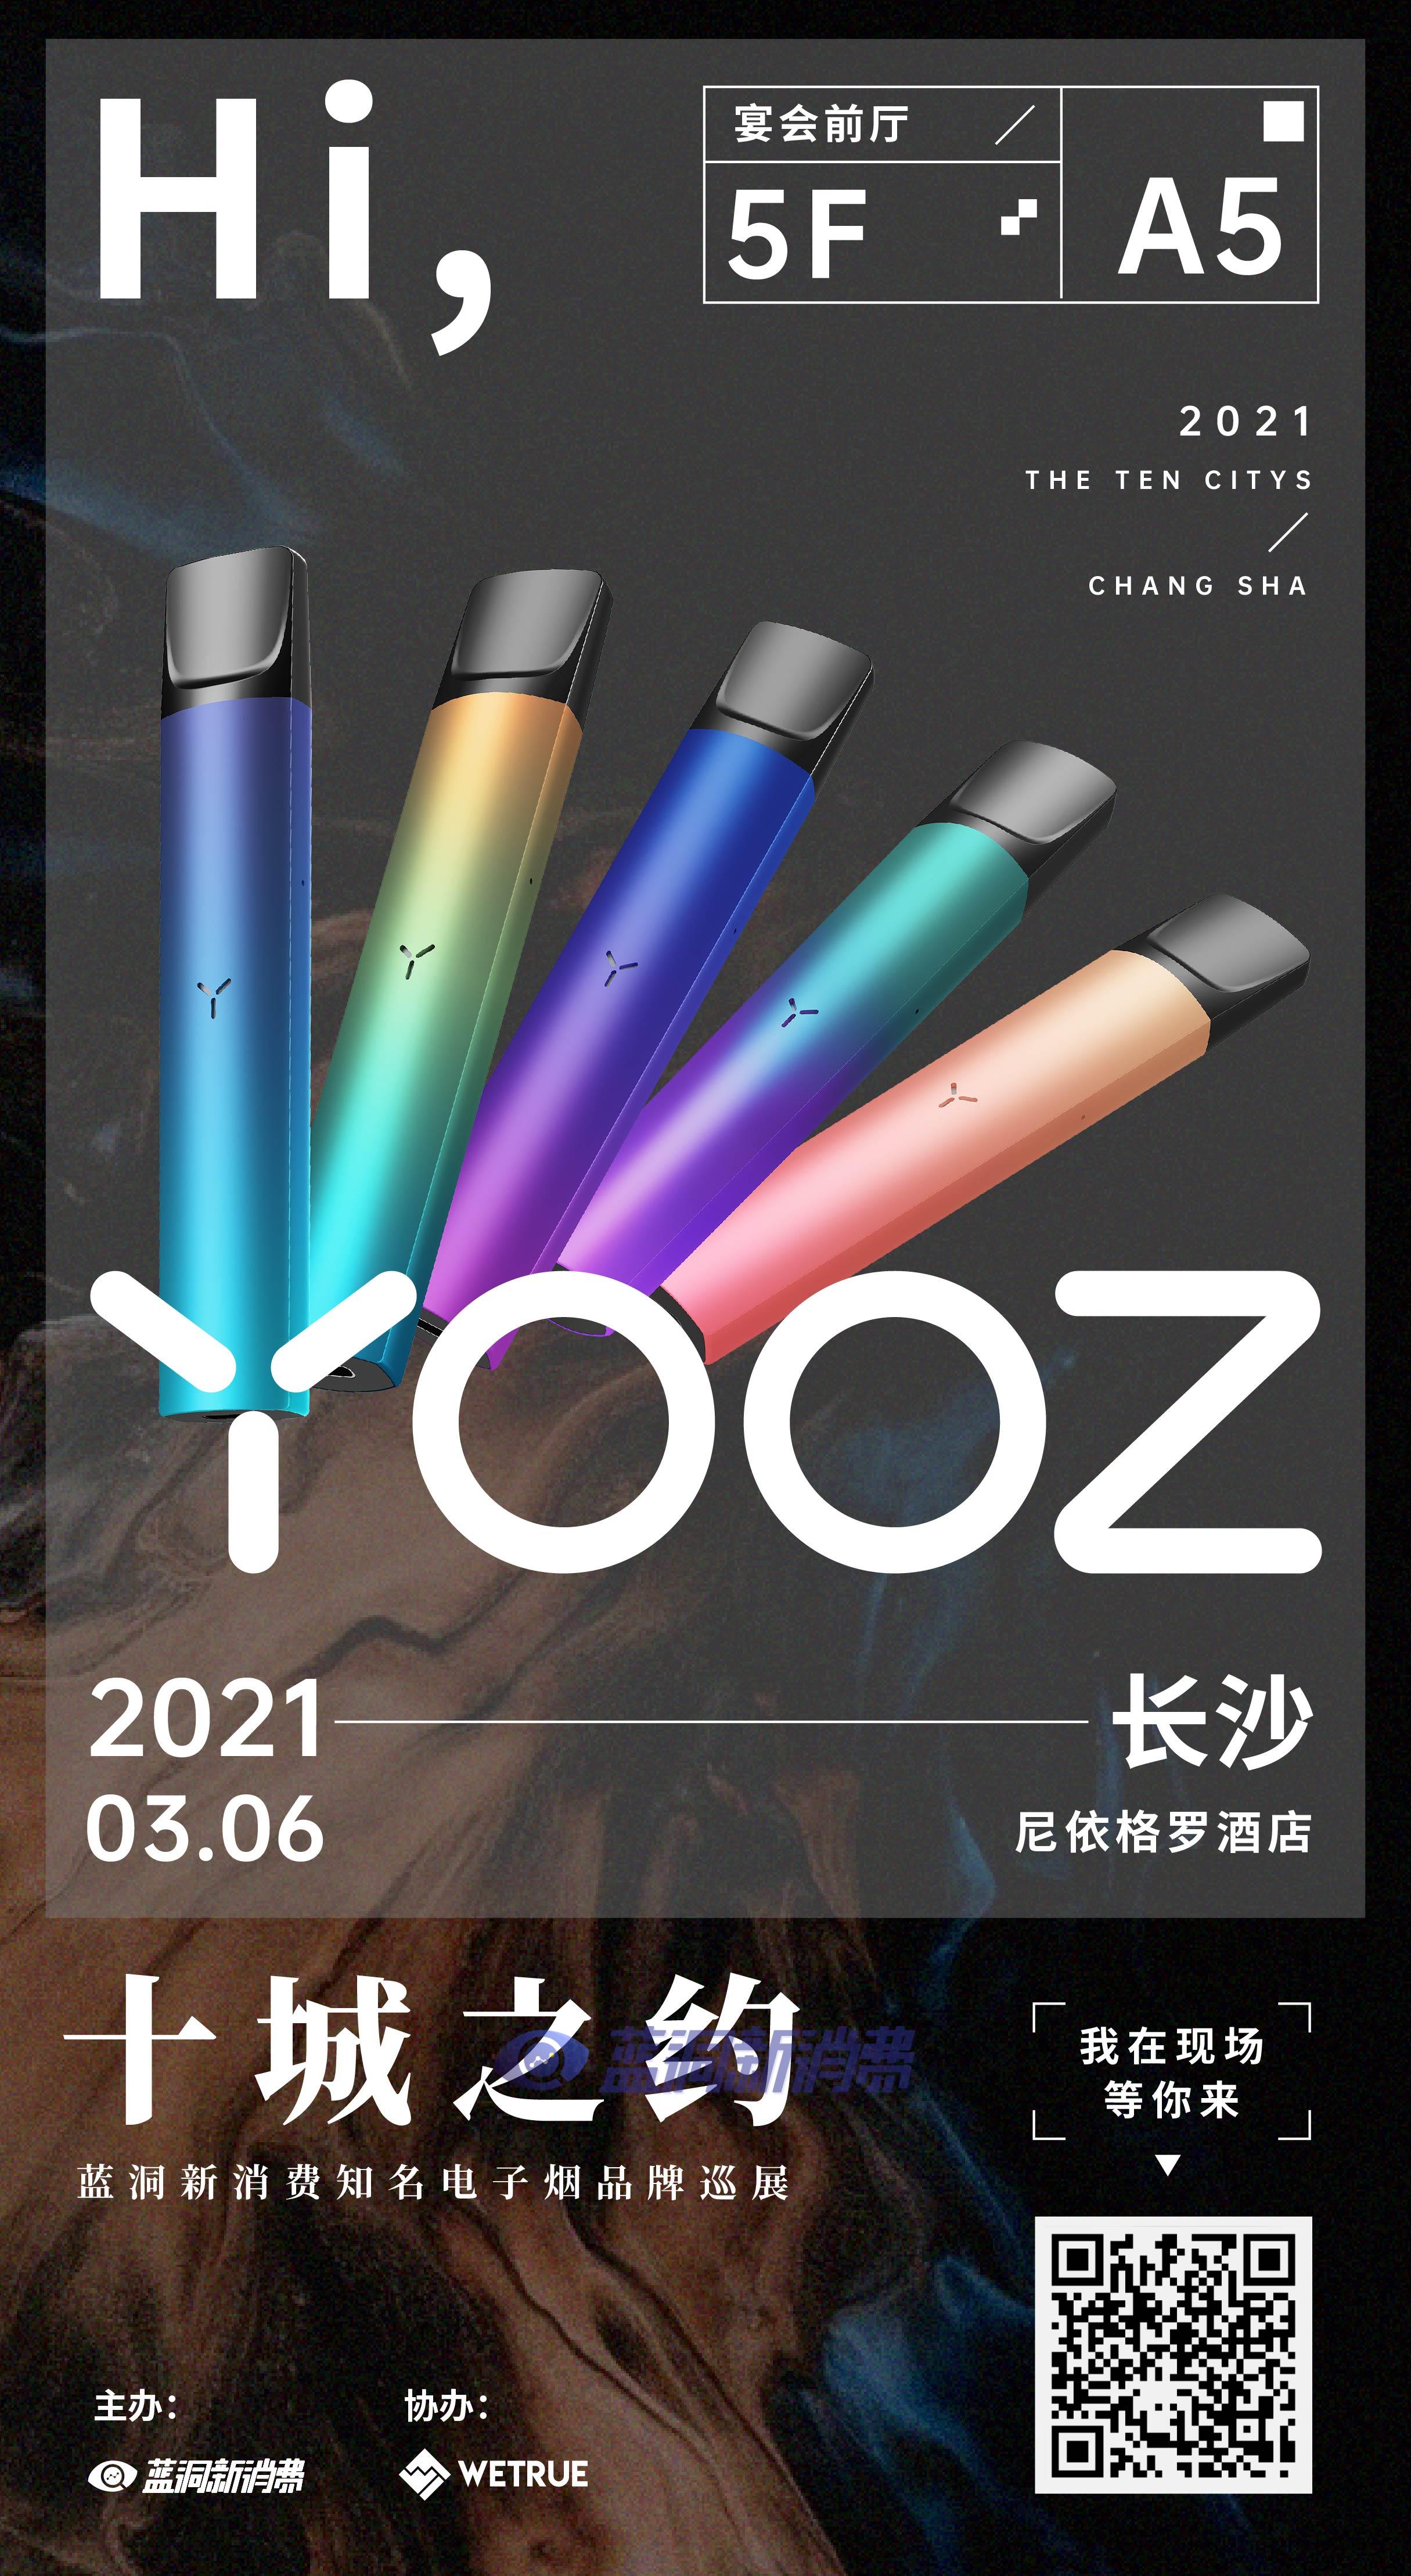 蓝洞电子烟巡展之长沙&成都站品牌巡礼:yooz柚子电子烟